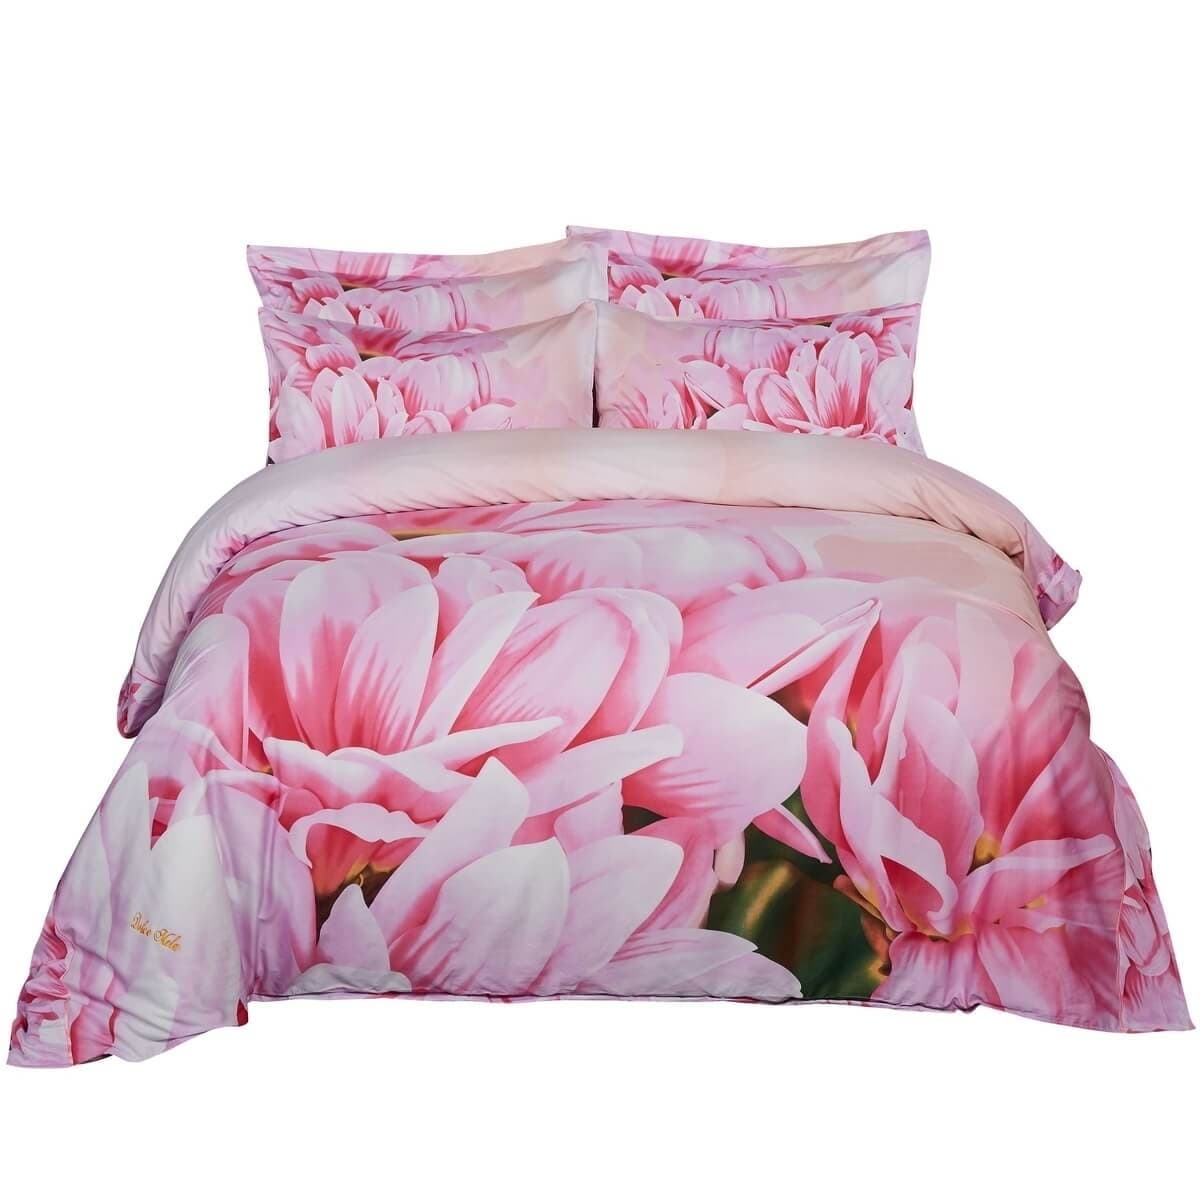 Shop Floral Duvet Cover Set 6 Piece Cotton Bedding Set W Fitted